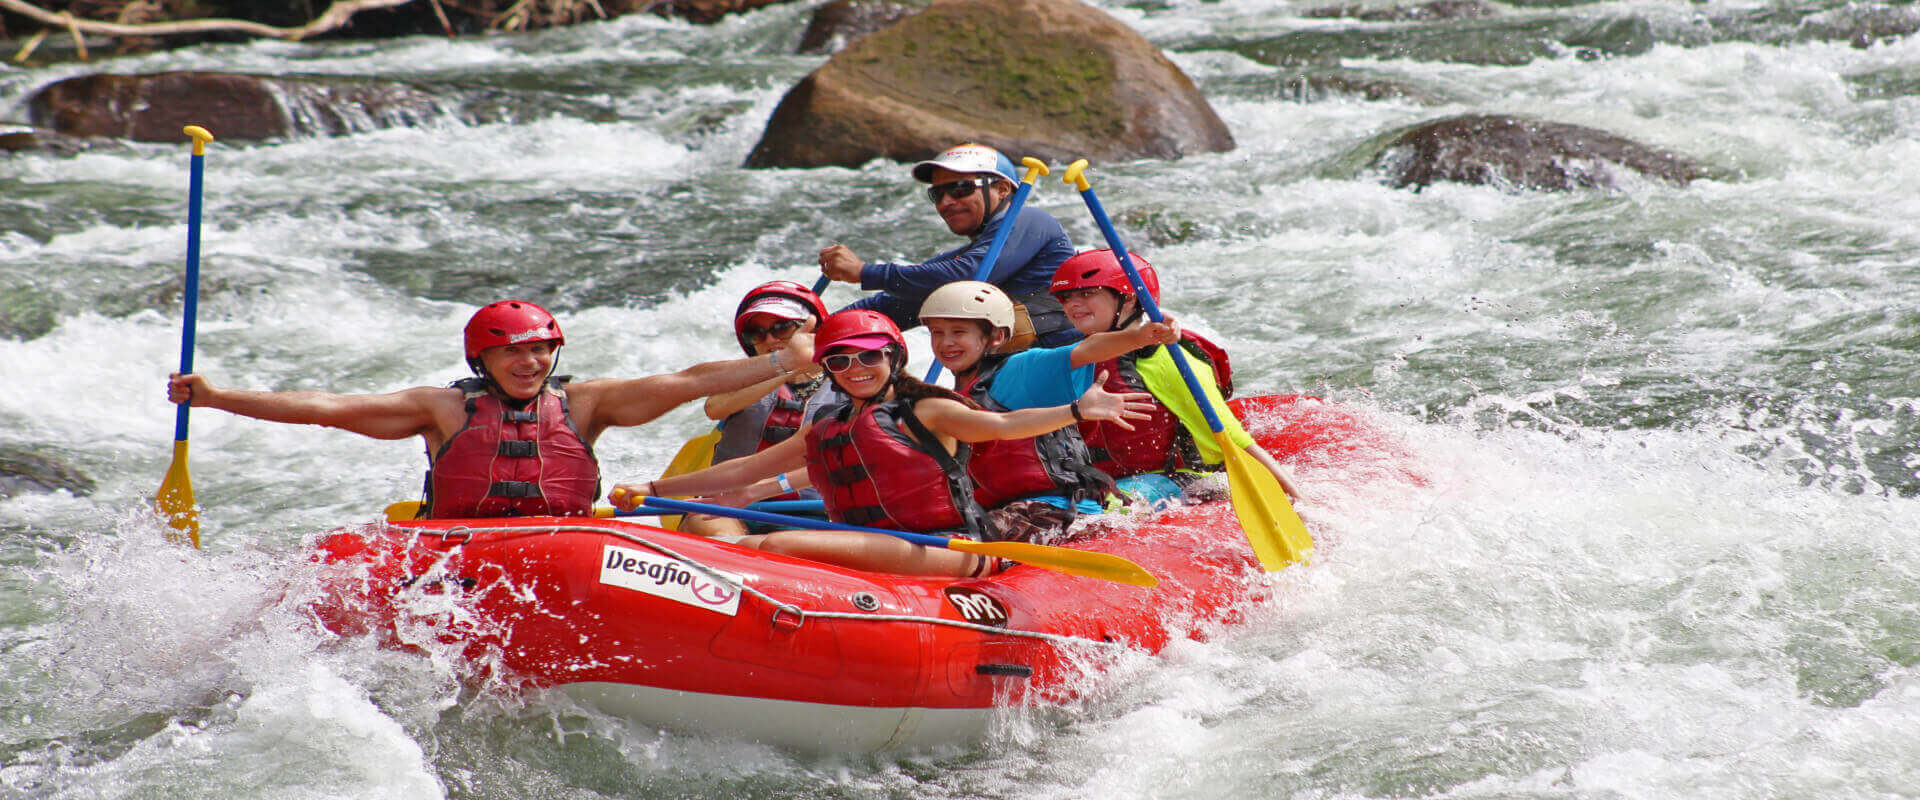 Rafting Clase III / IV en el río Tenorio | Costa Rica Jade Tours